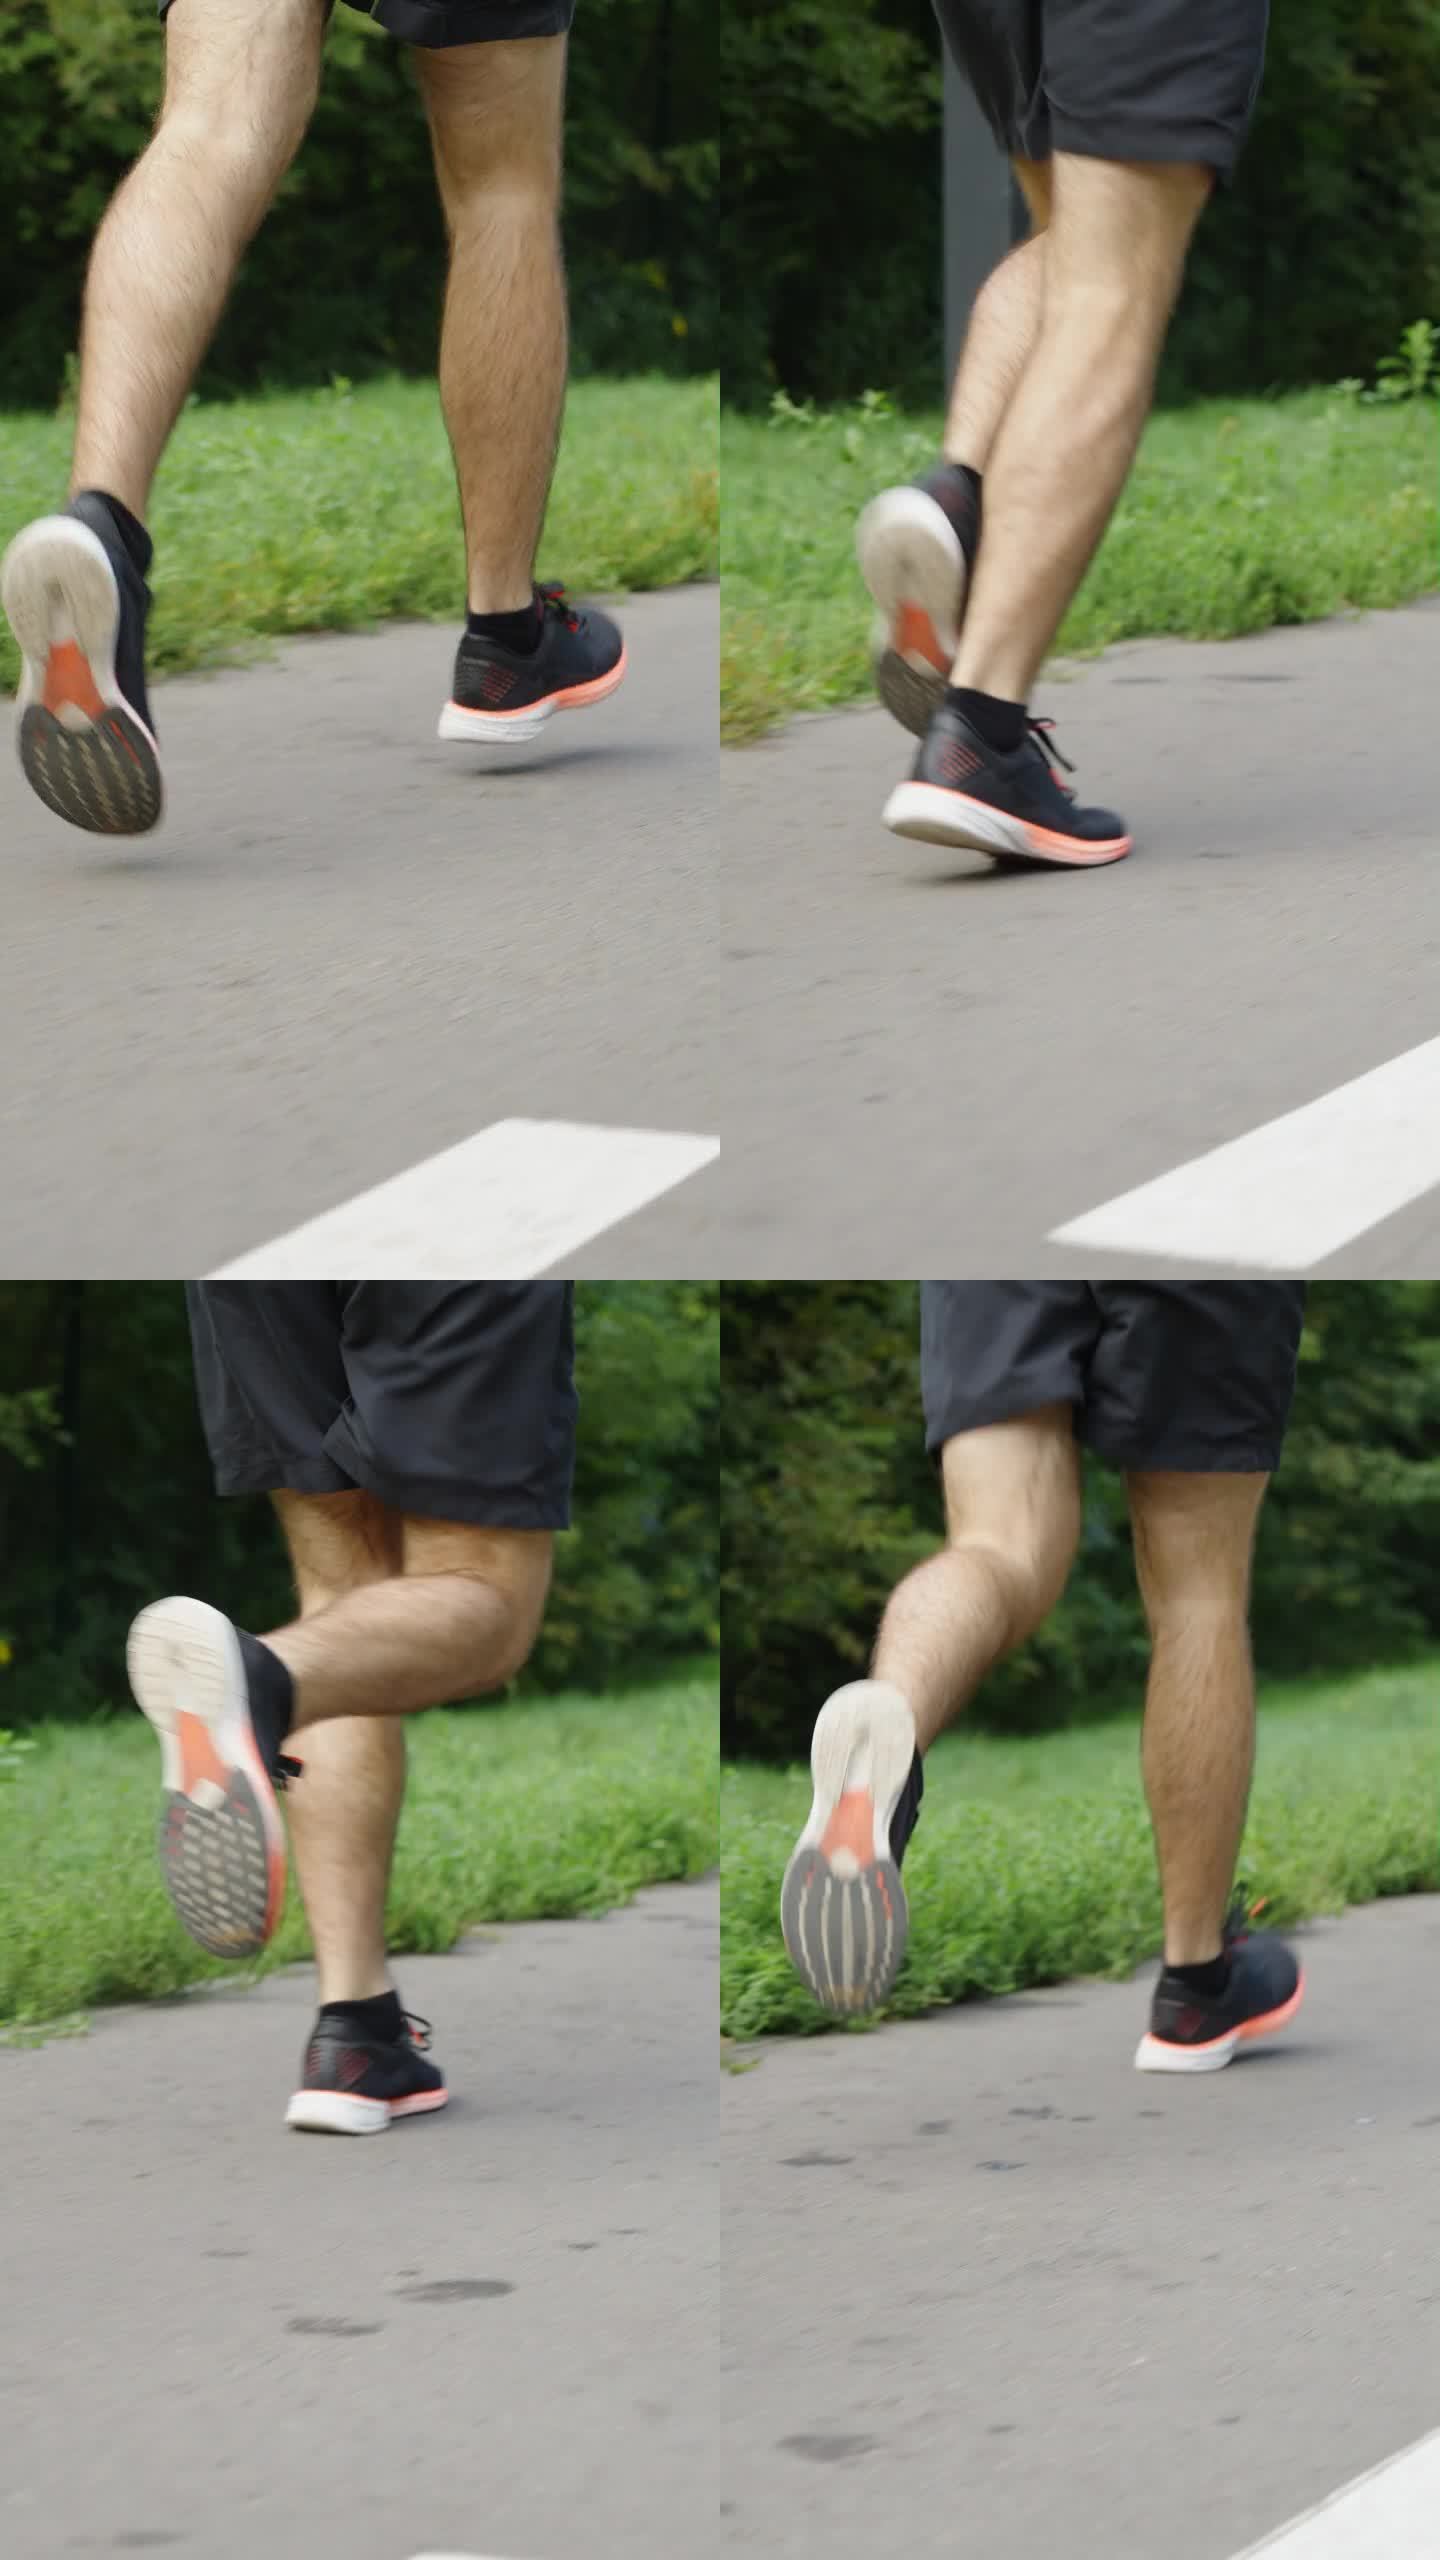 垂直掩护:在有标记的道路上奔跑者的腿